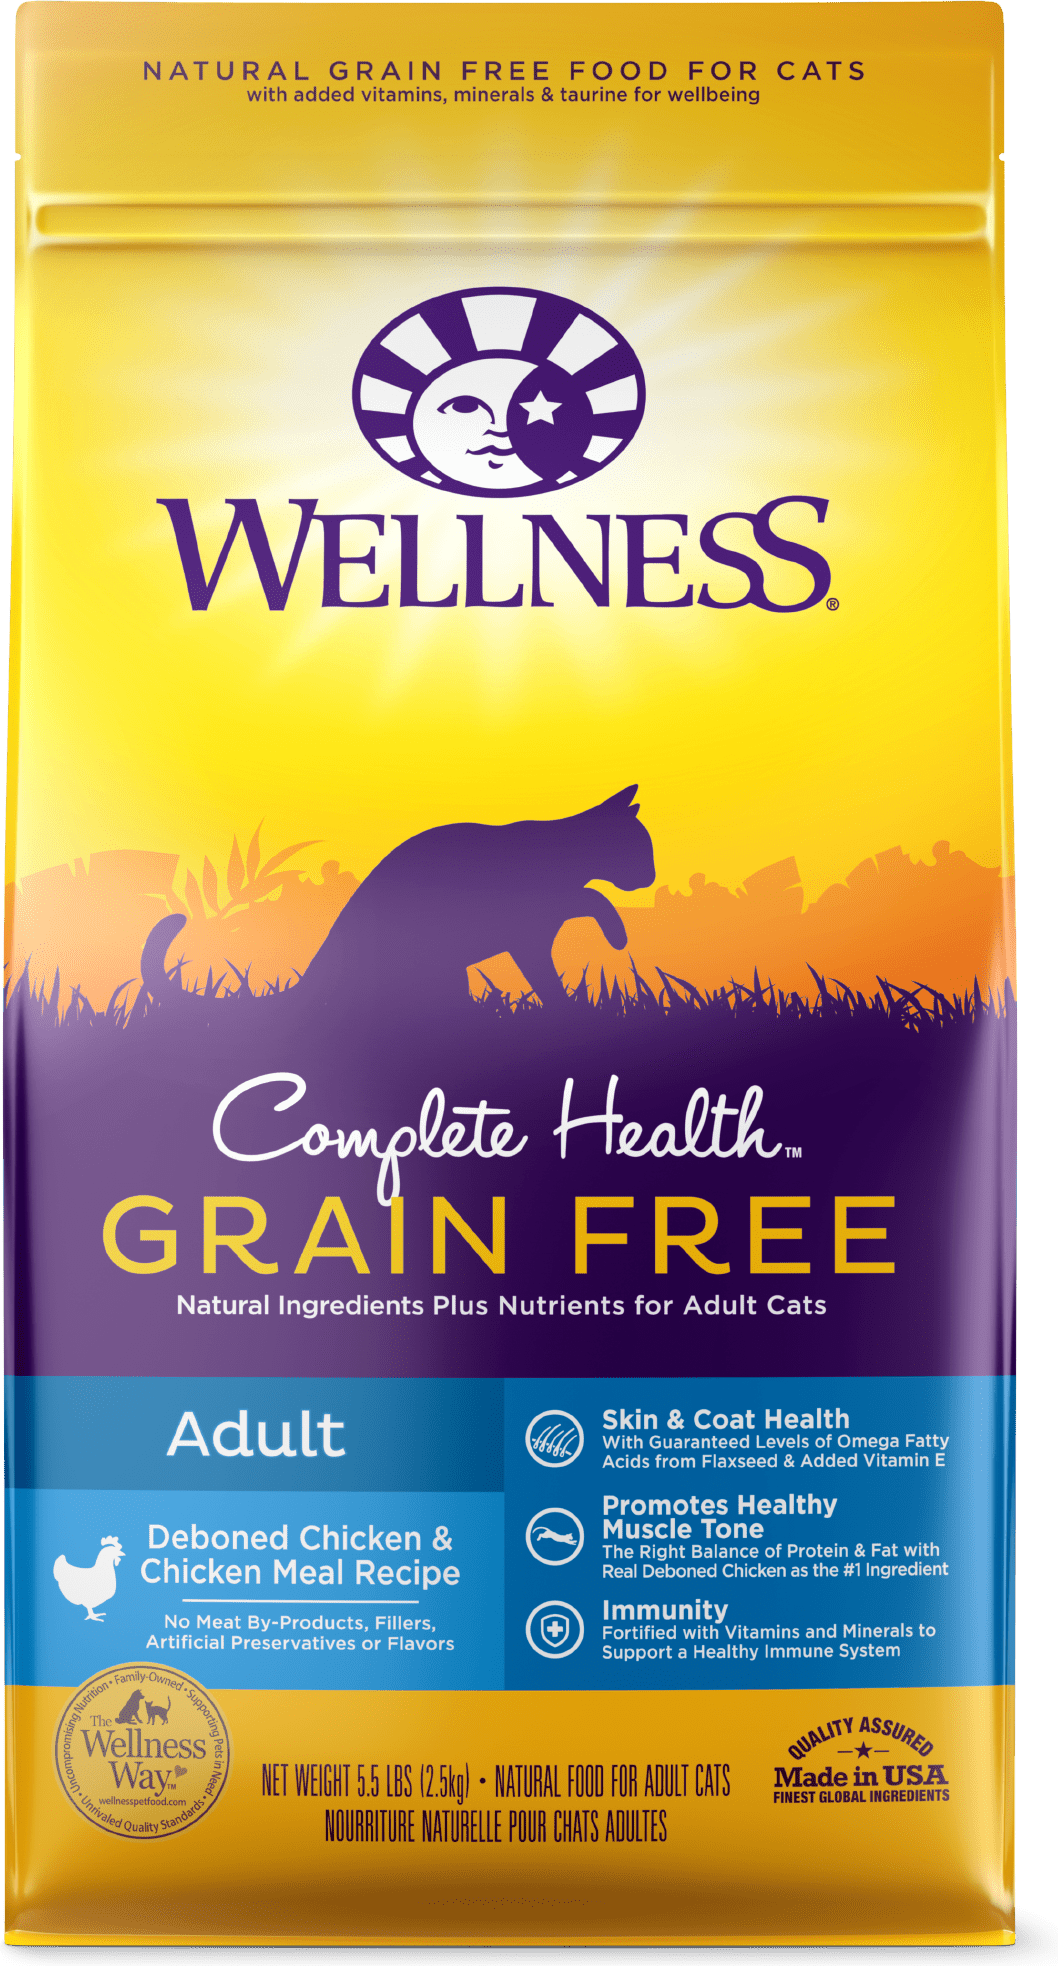 Wellness Complete Health Grain Free Adult: Deboned Chicken & Chicken Meal